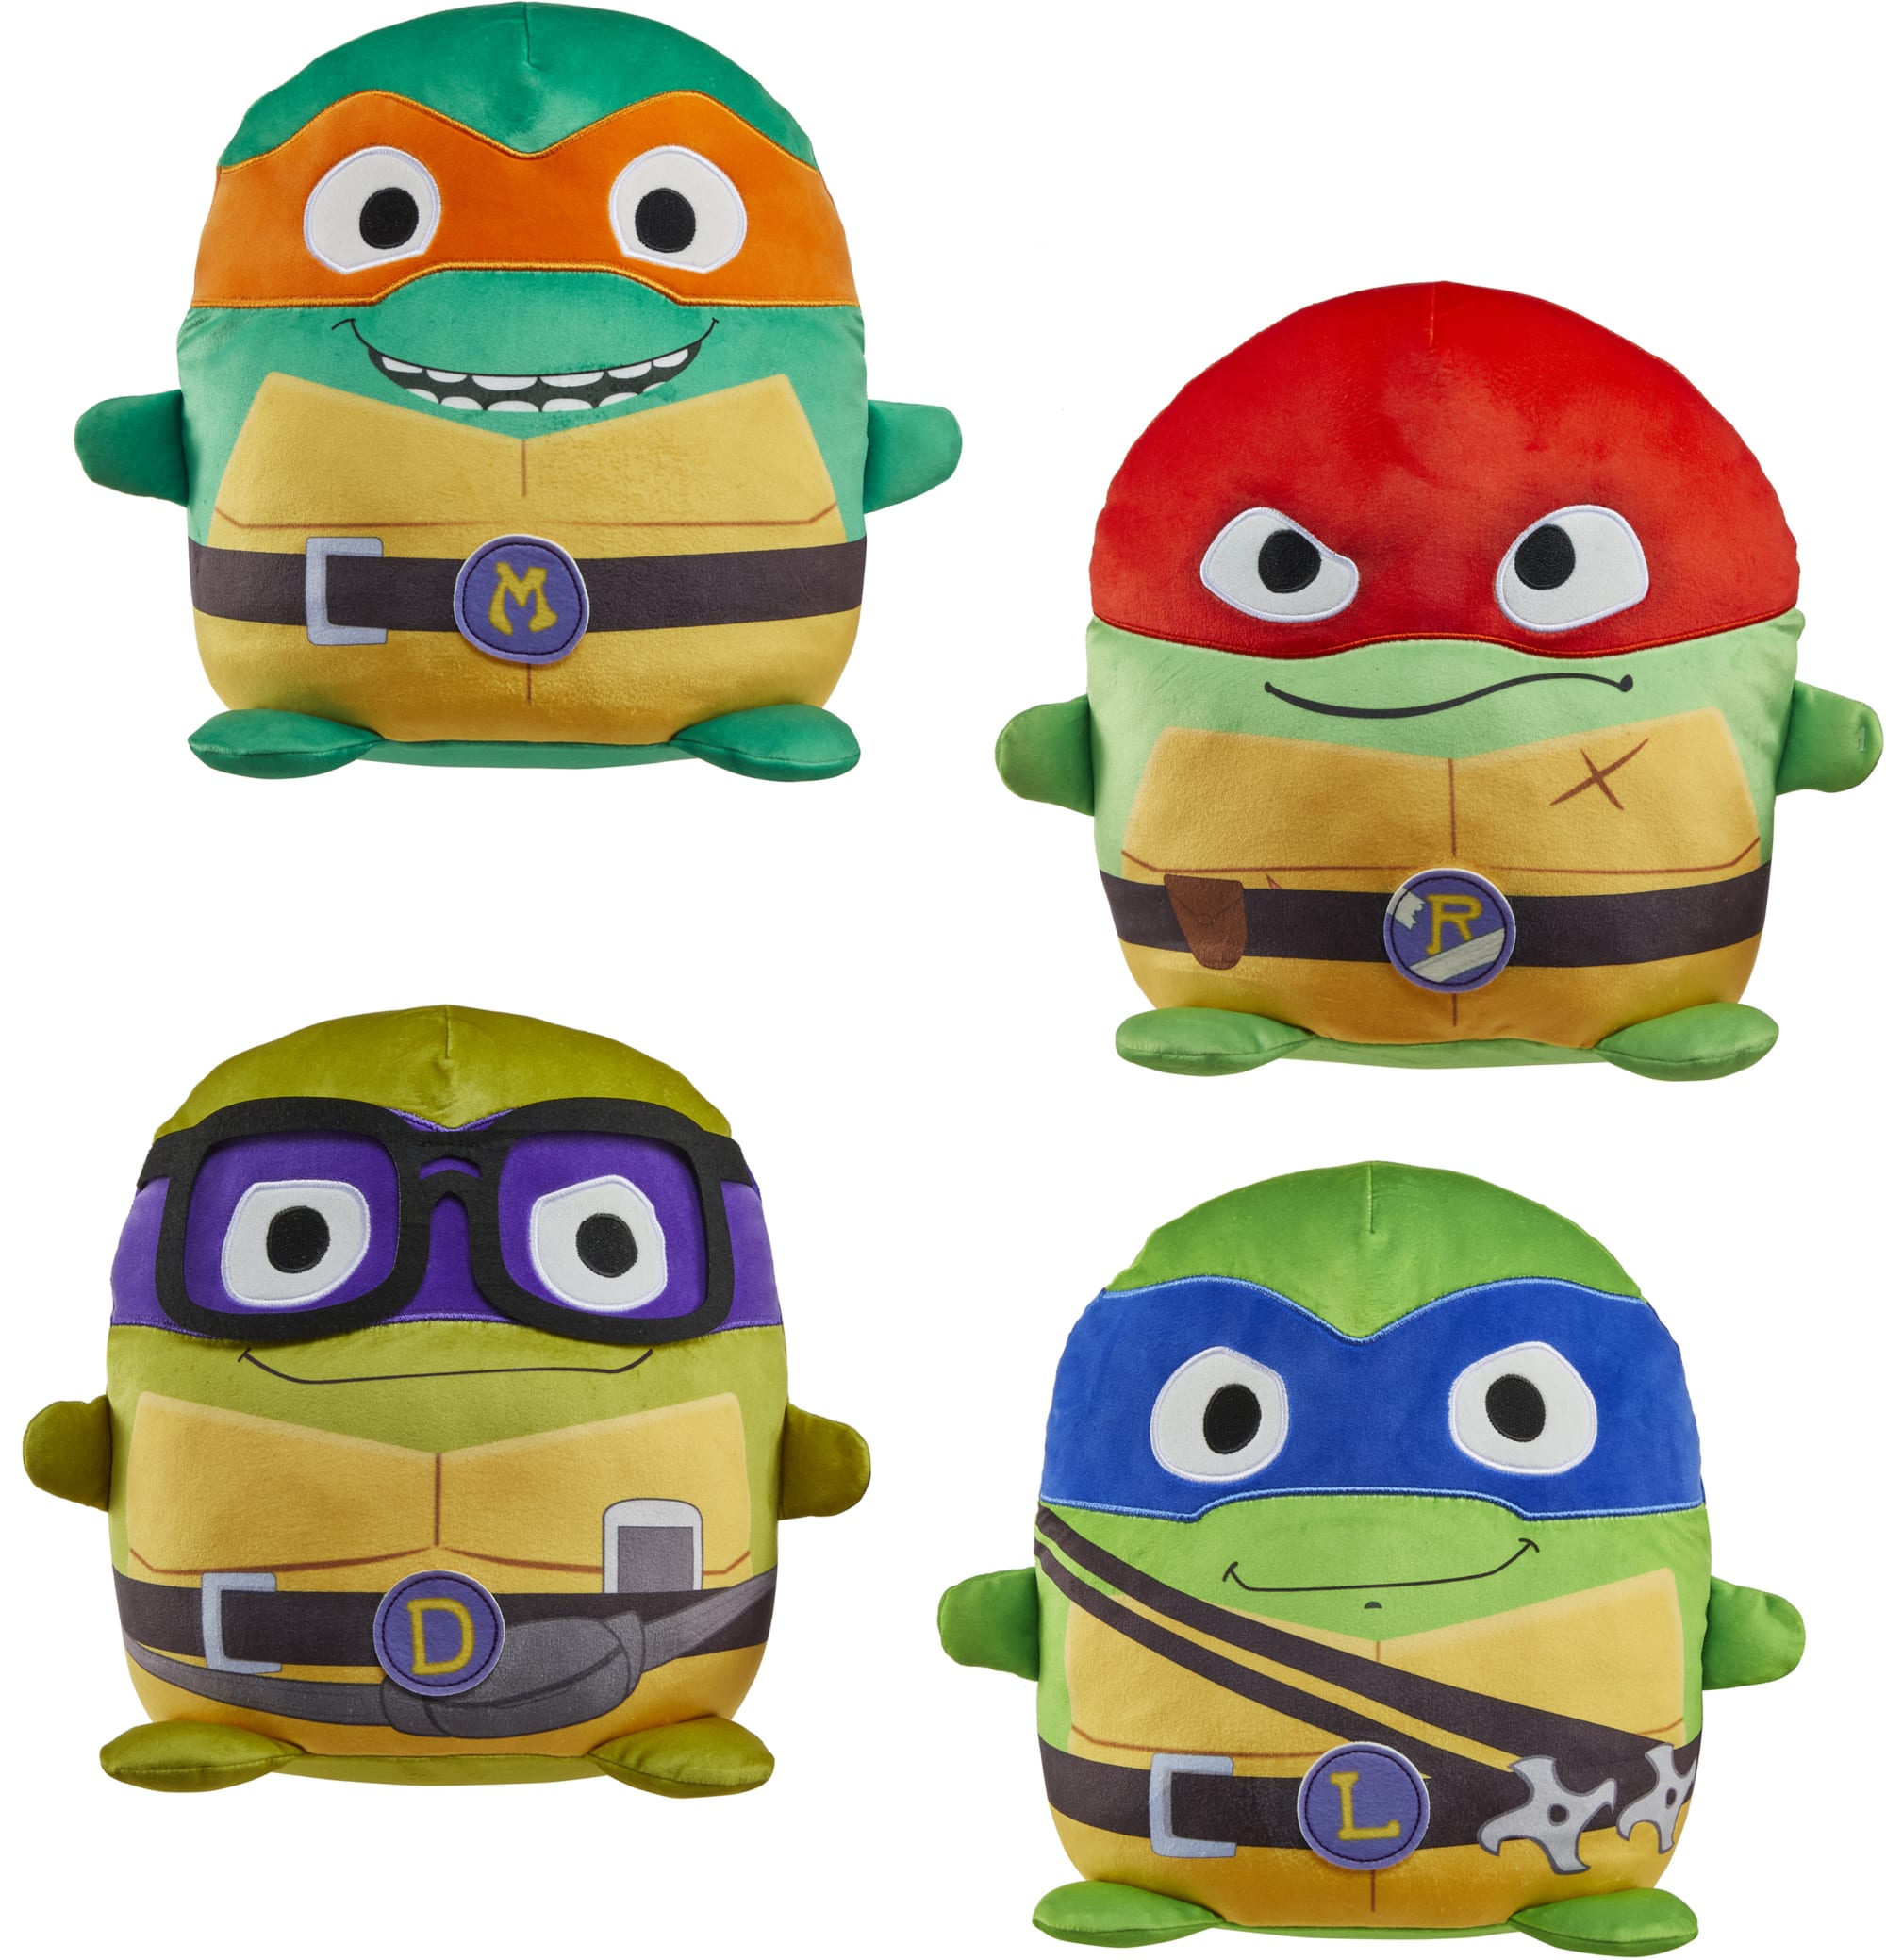 Teenage Mutant Ninja Turtles: Mutant Mayhem Plush Toys Cuutopia, 5 Inch  TMNT Kawaii-Style Plush, Key Movie Characters